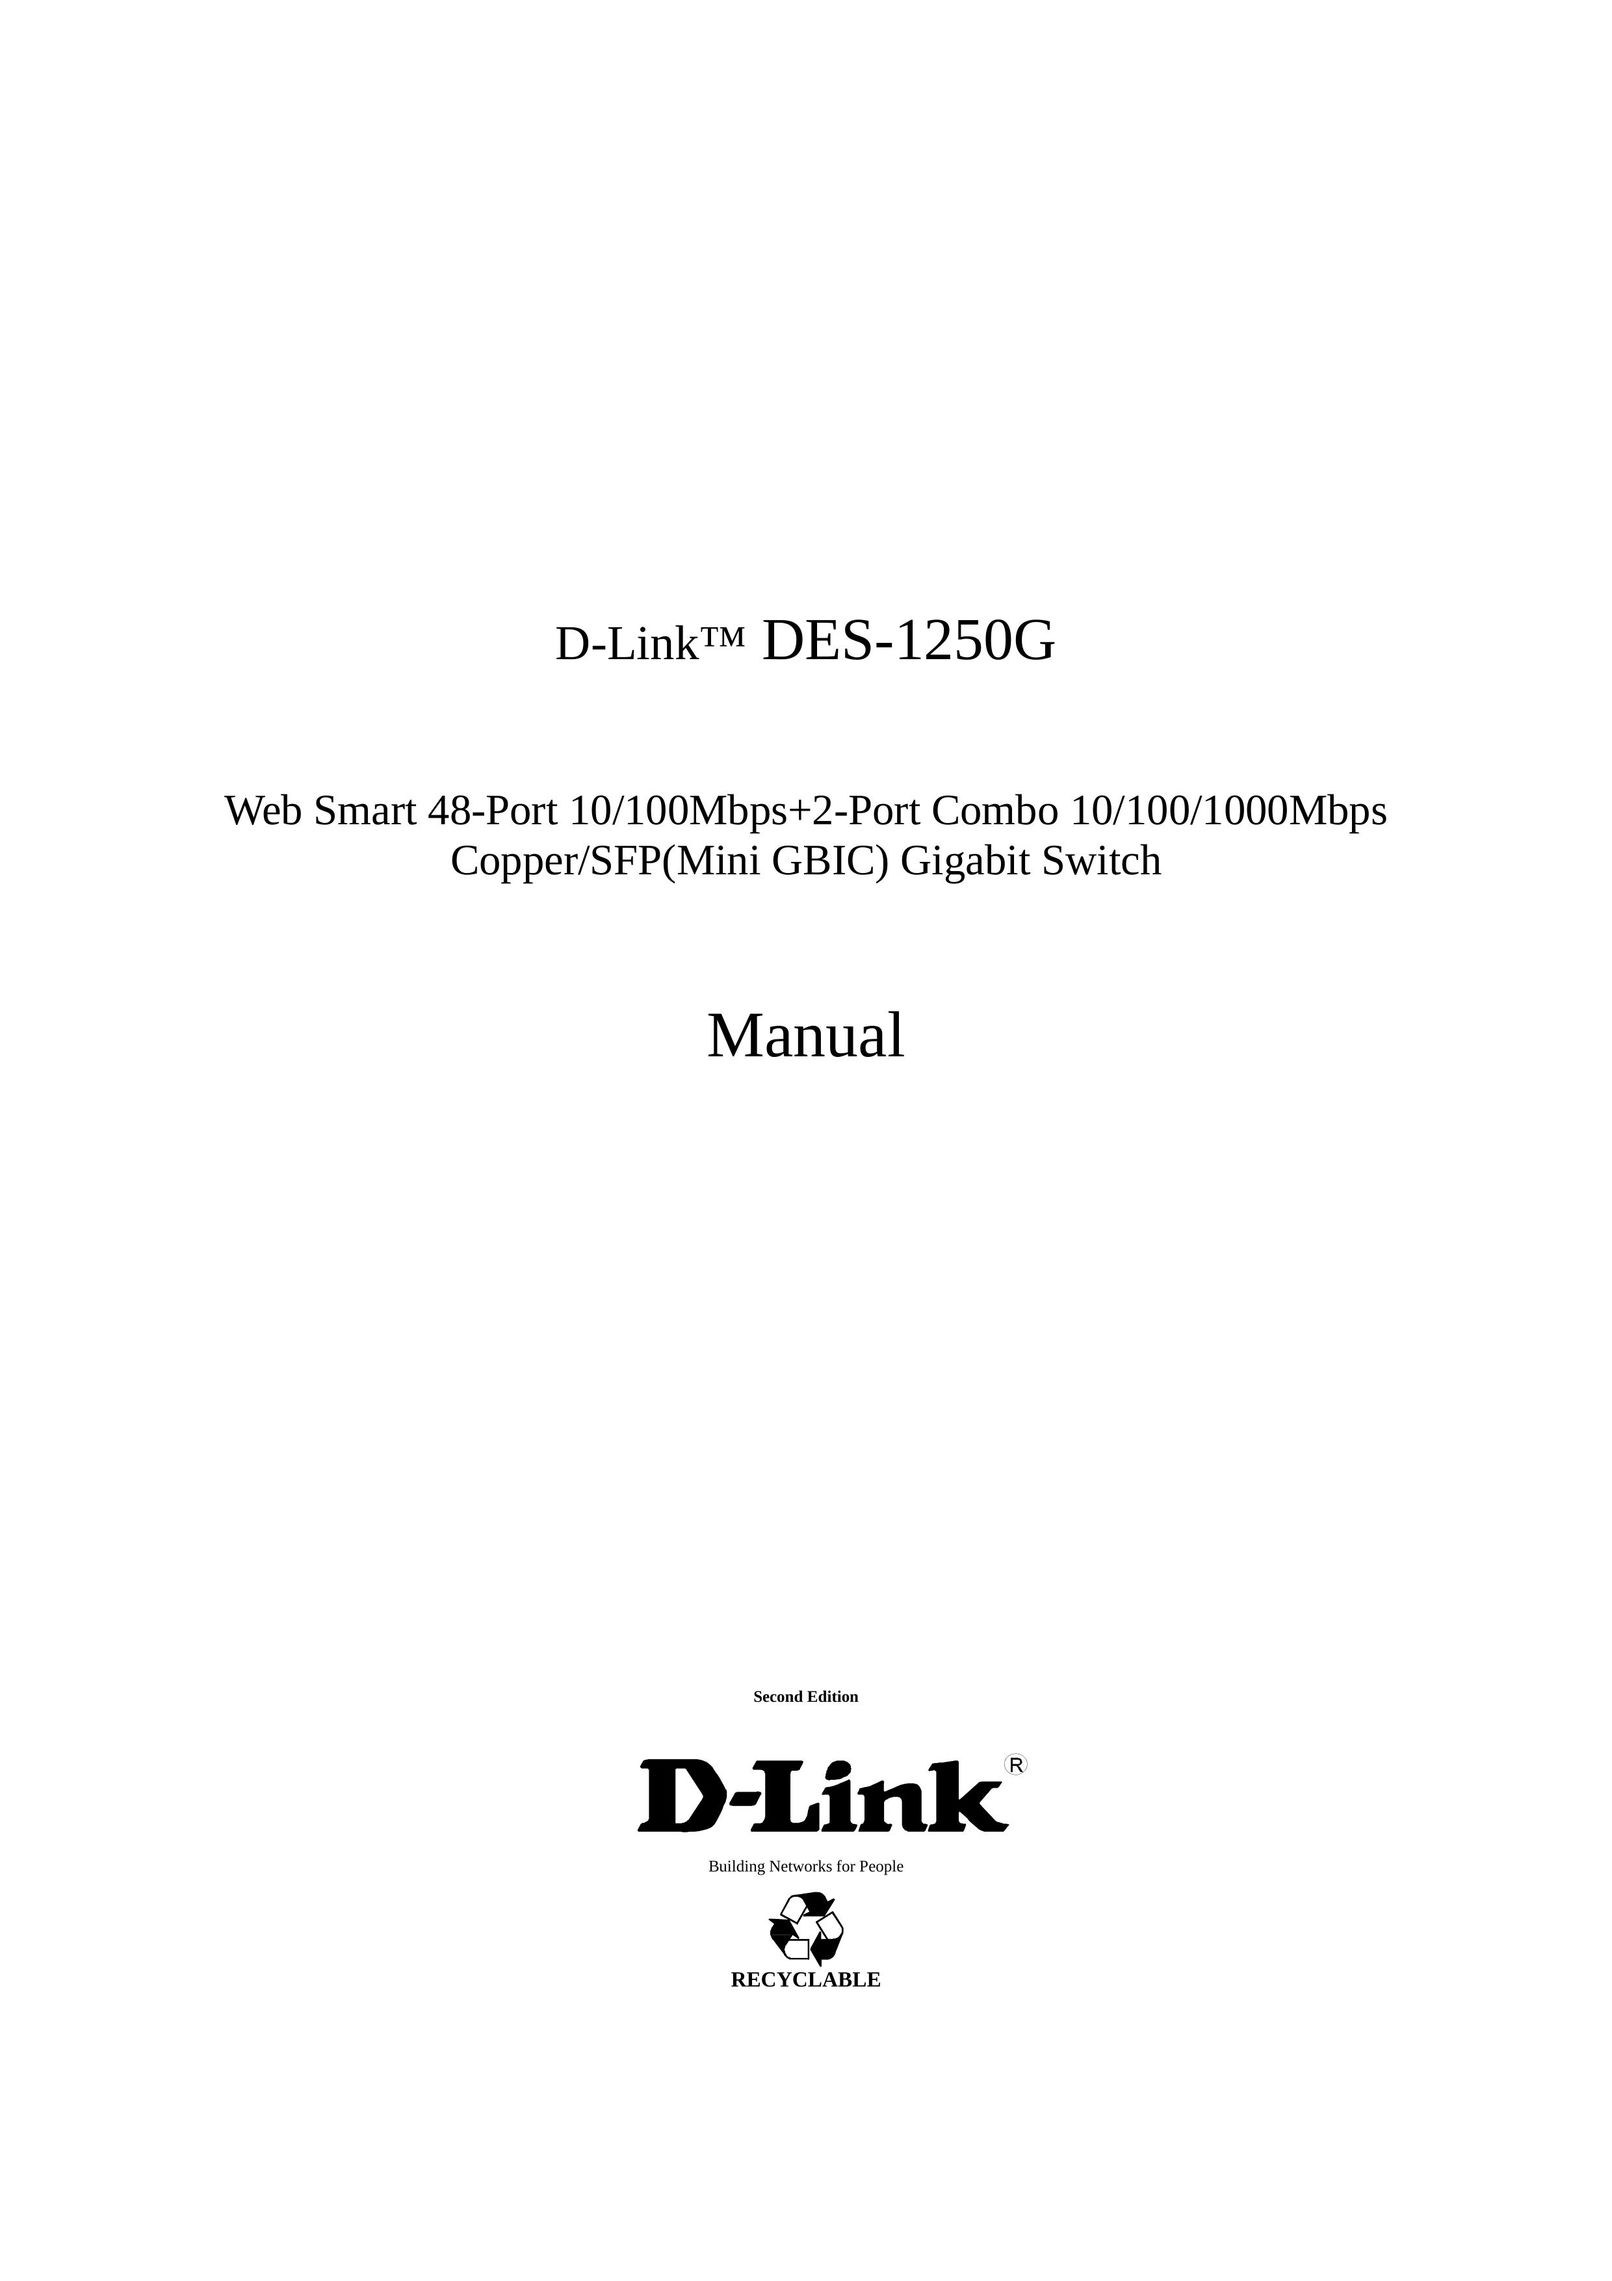 D-Link DES-1250G Switch User Manual